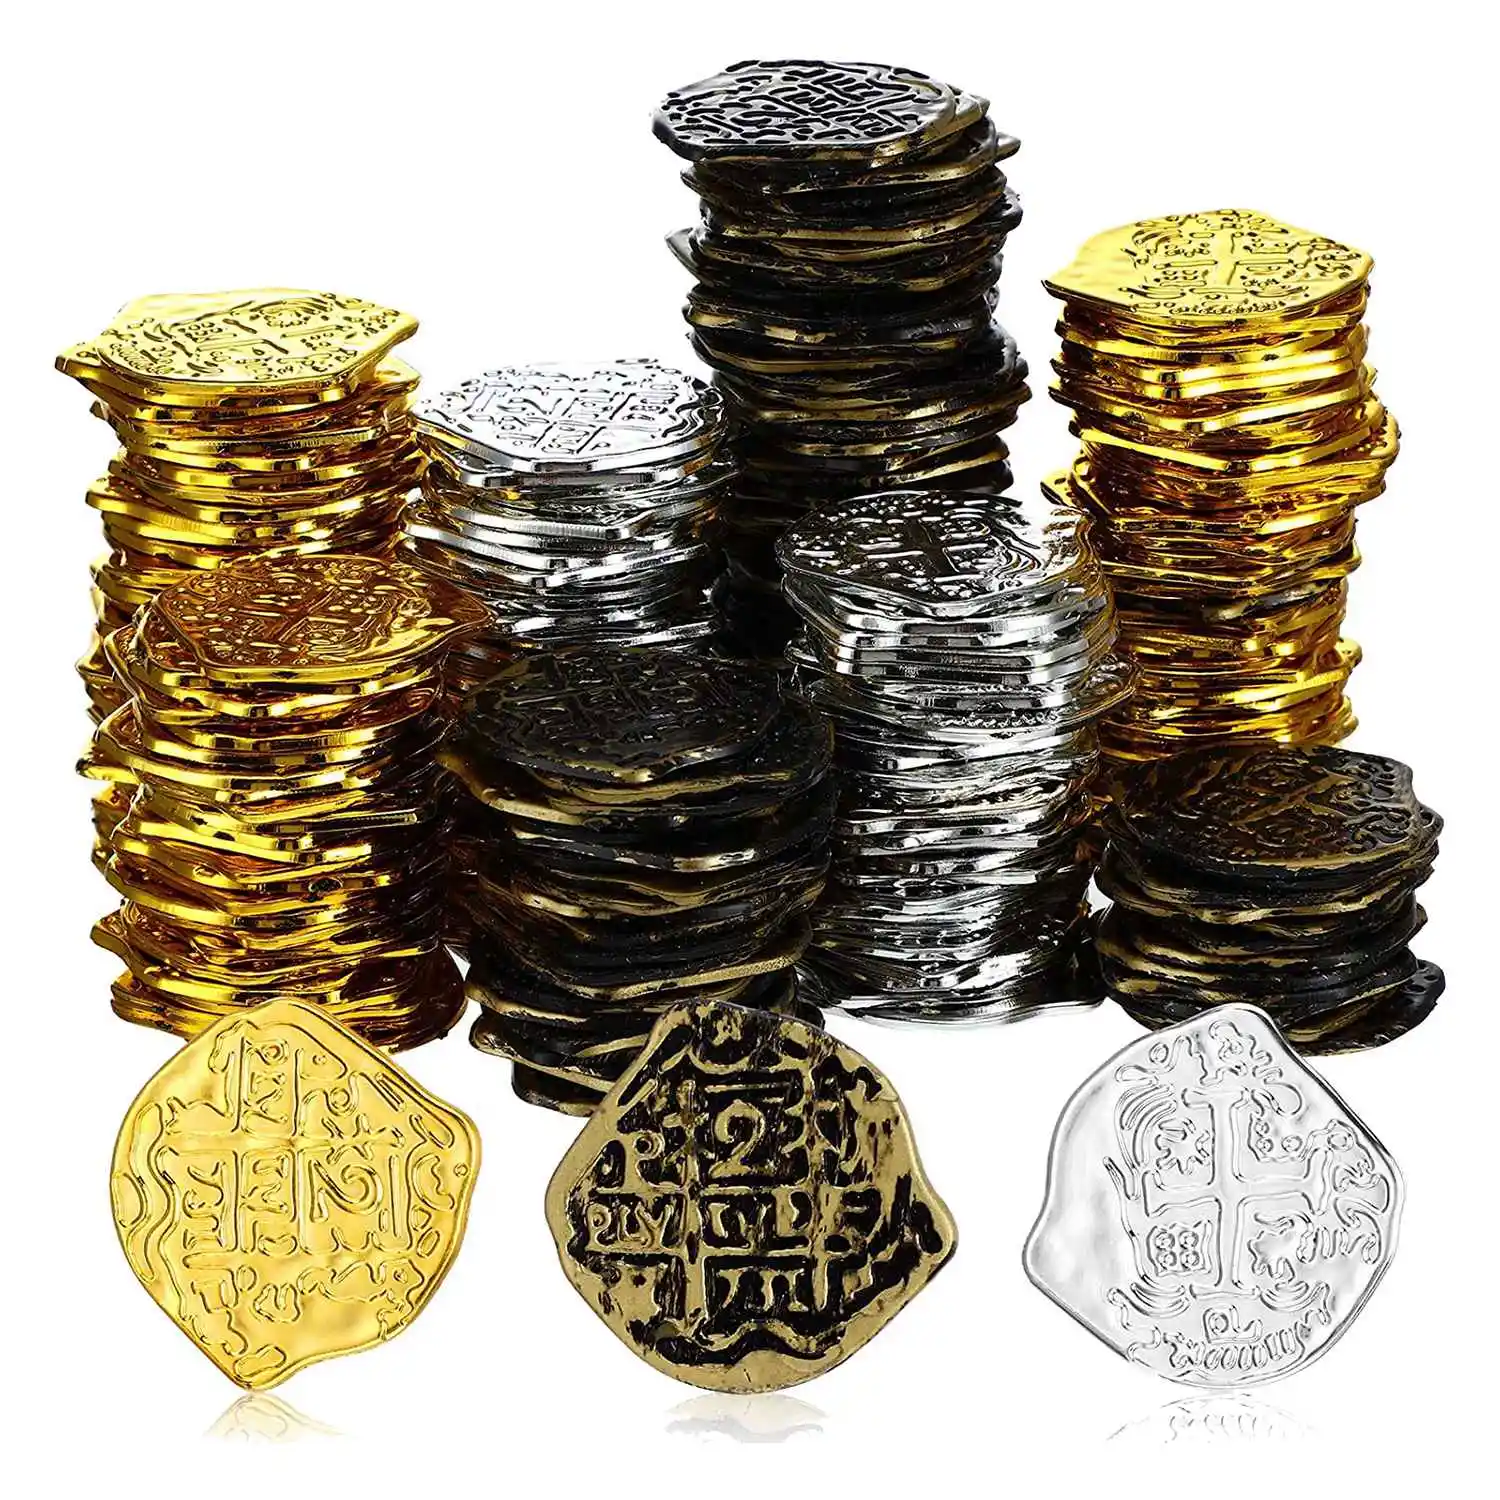 

Пластиковые Золотые монеты 300 шт., пиратские монеты, детские игровые монеты для пиратов, настольные игры с сокровищами, игрушки для косплея